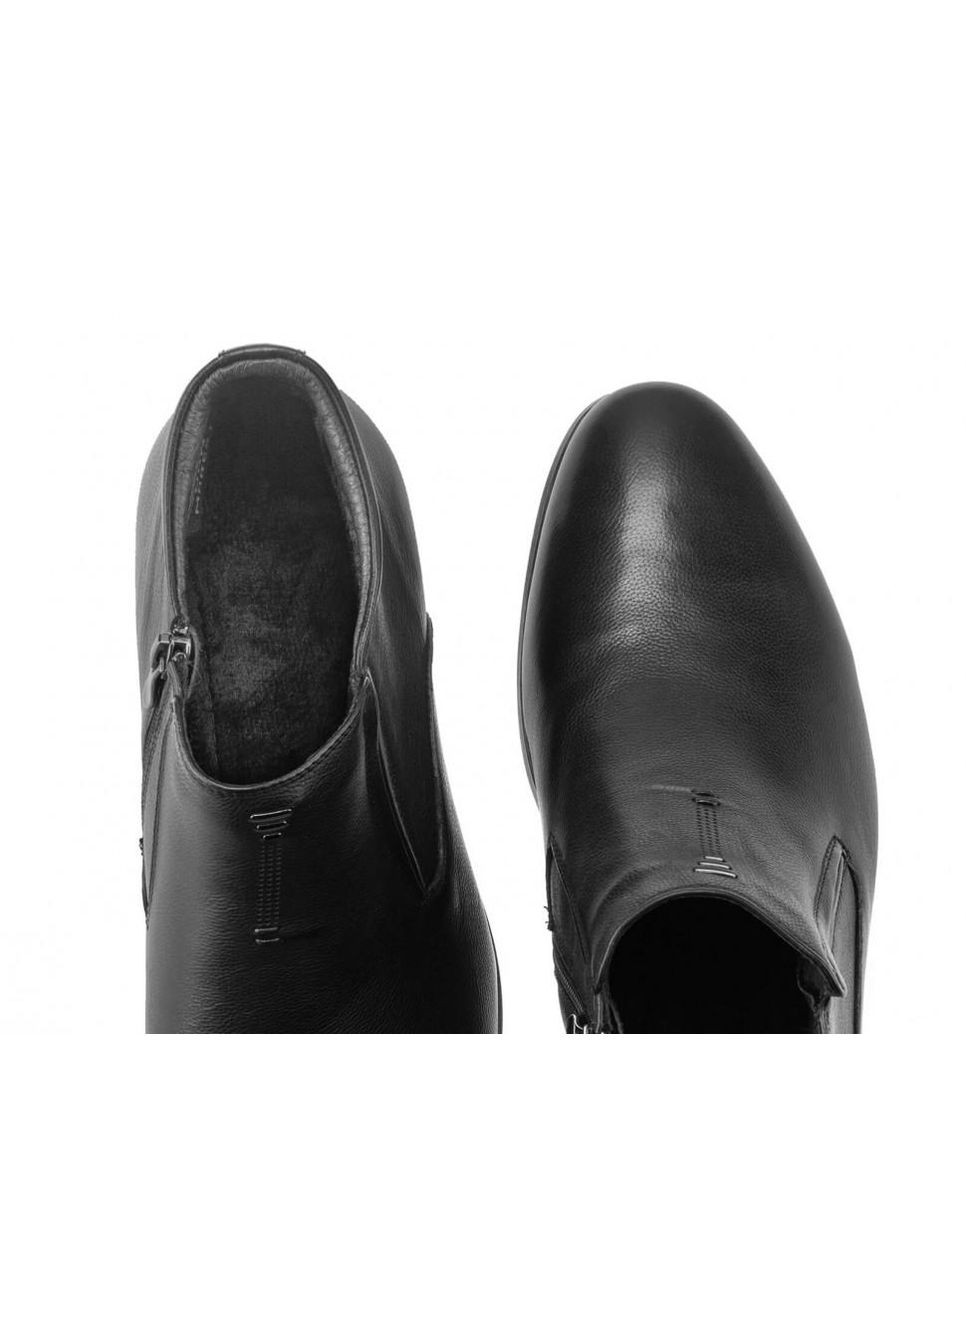 Черные зимние ботинки 7194165-б цвет черный Dan Marest